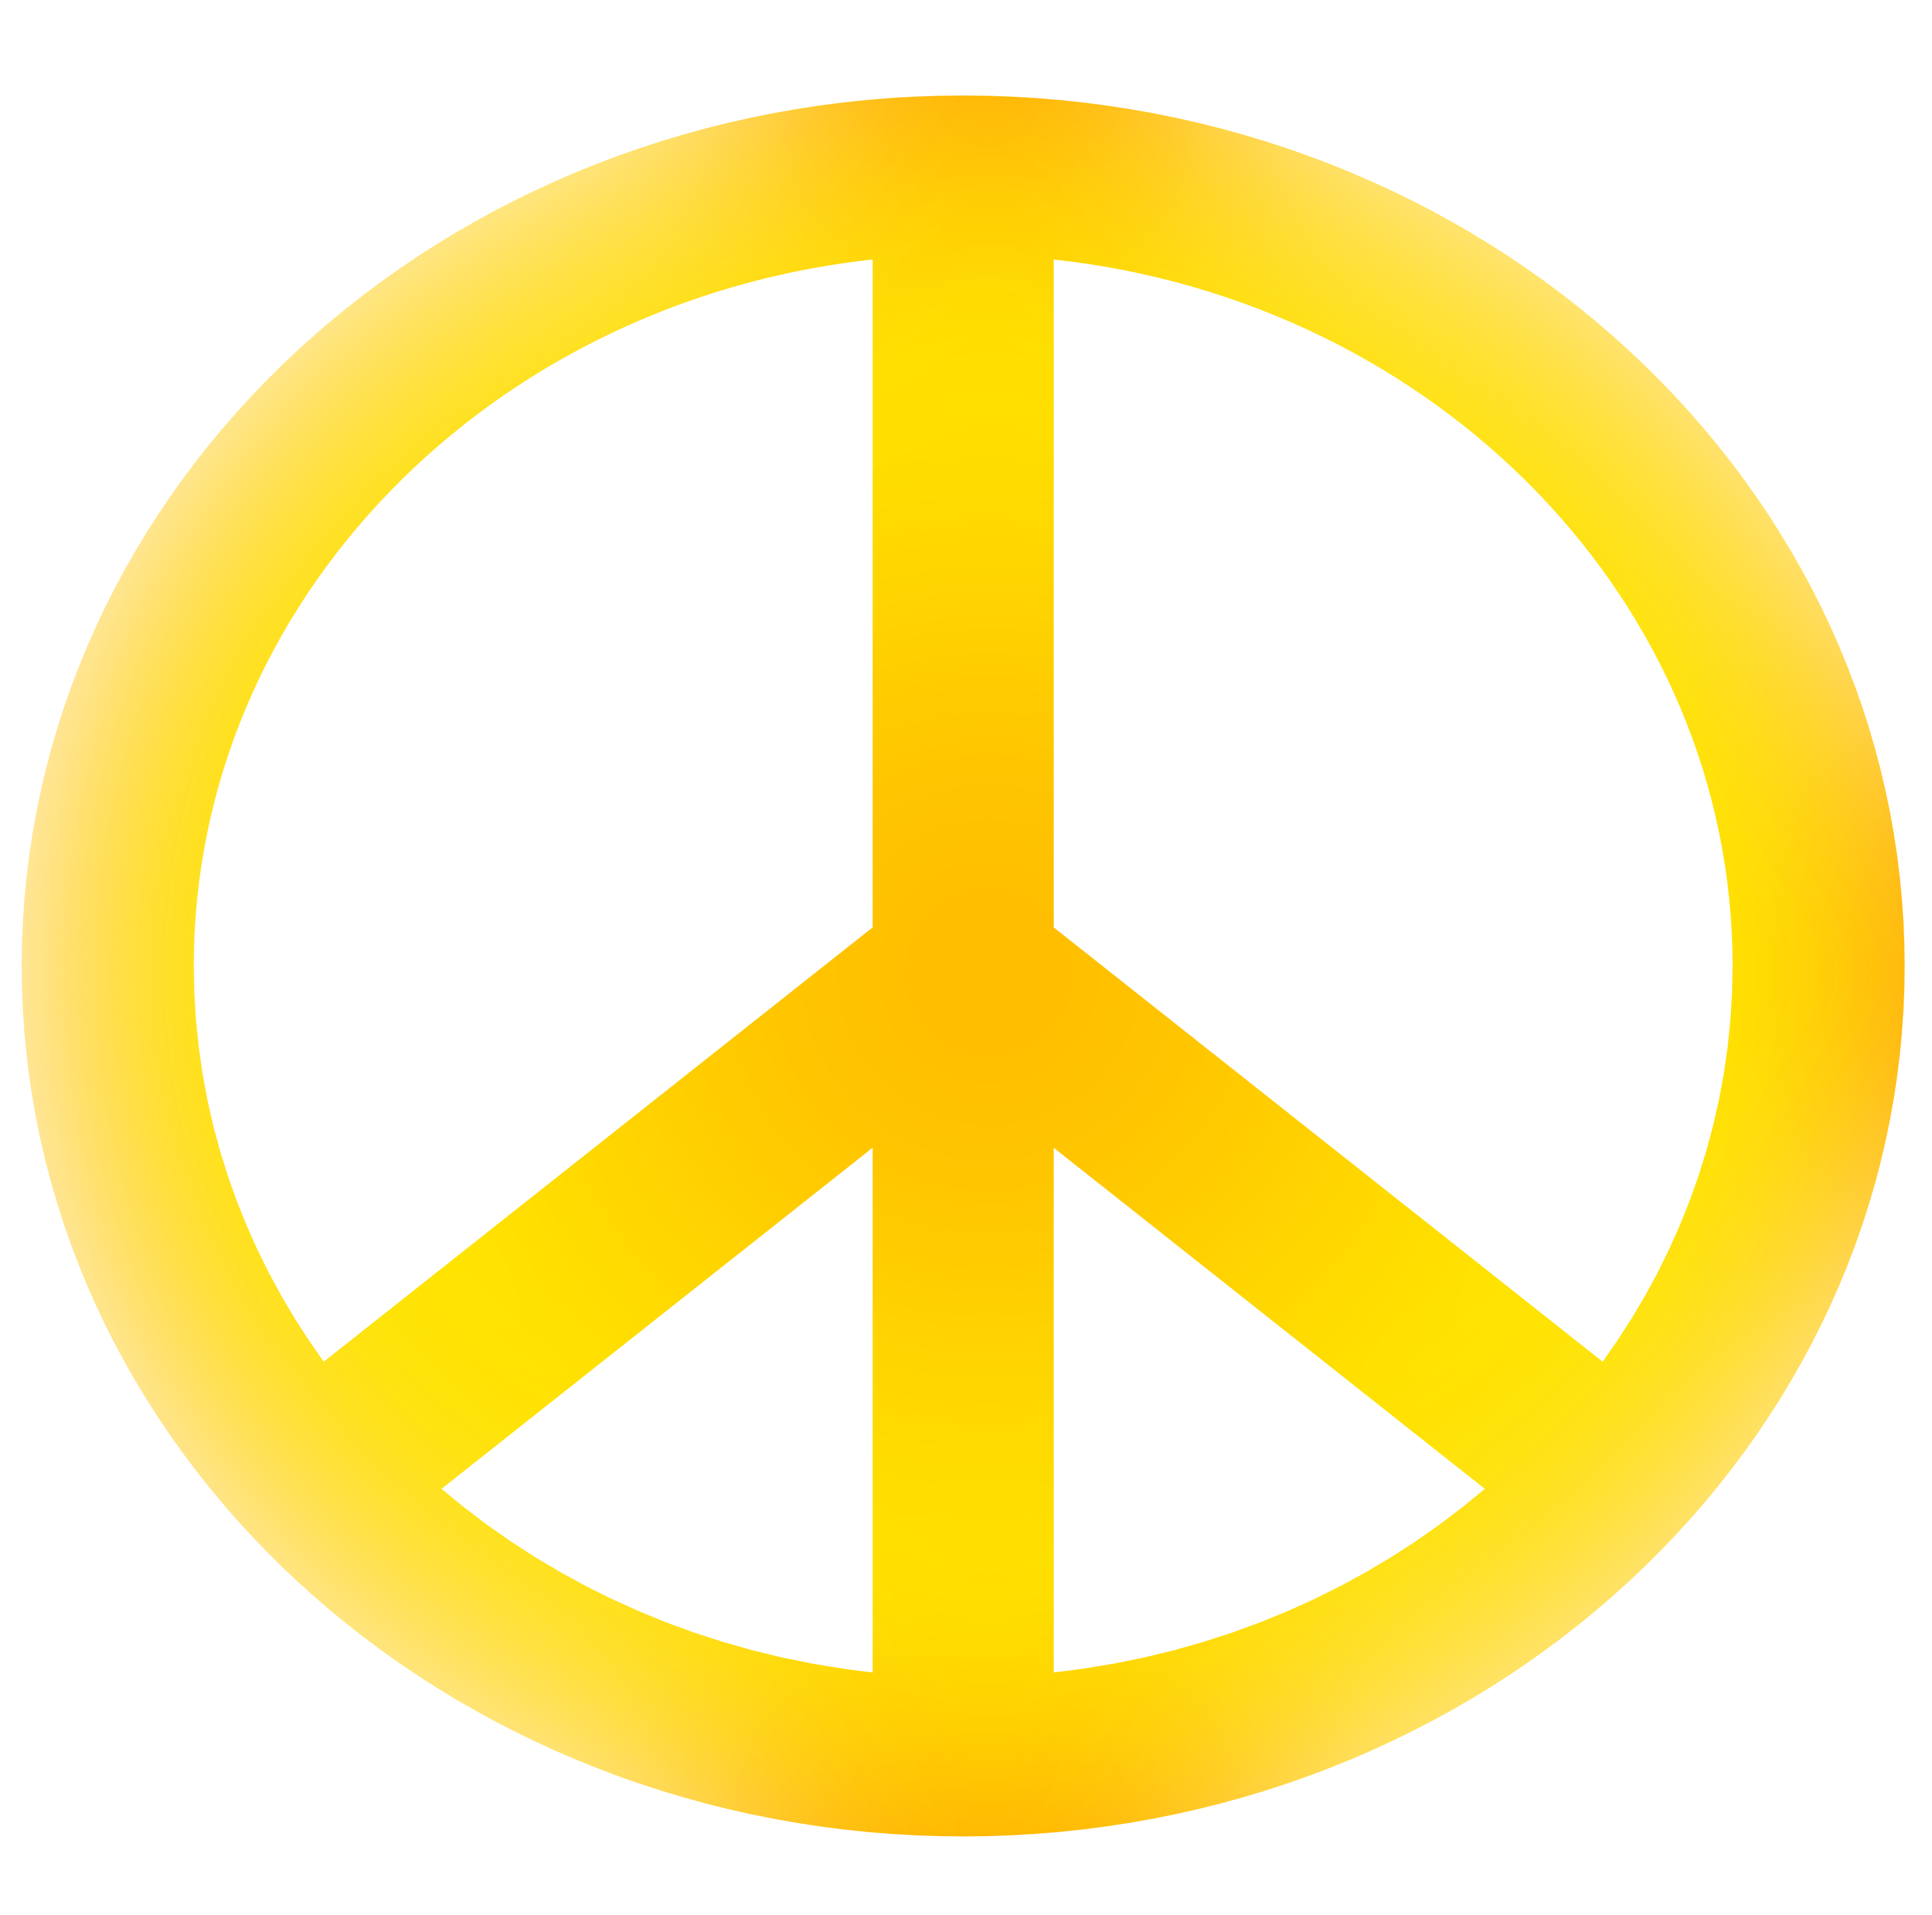 Peace sign art clipart image - Clipartix